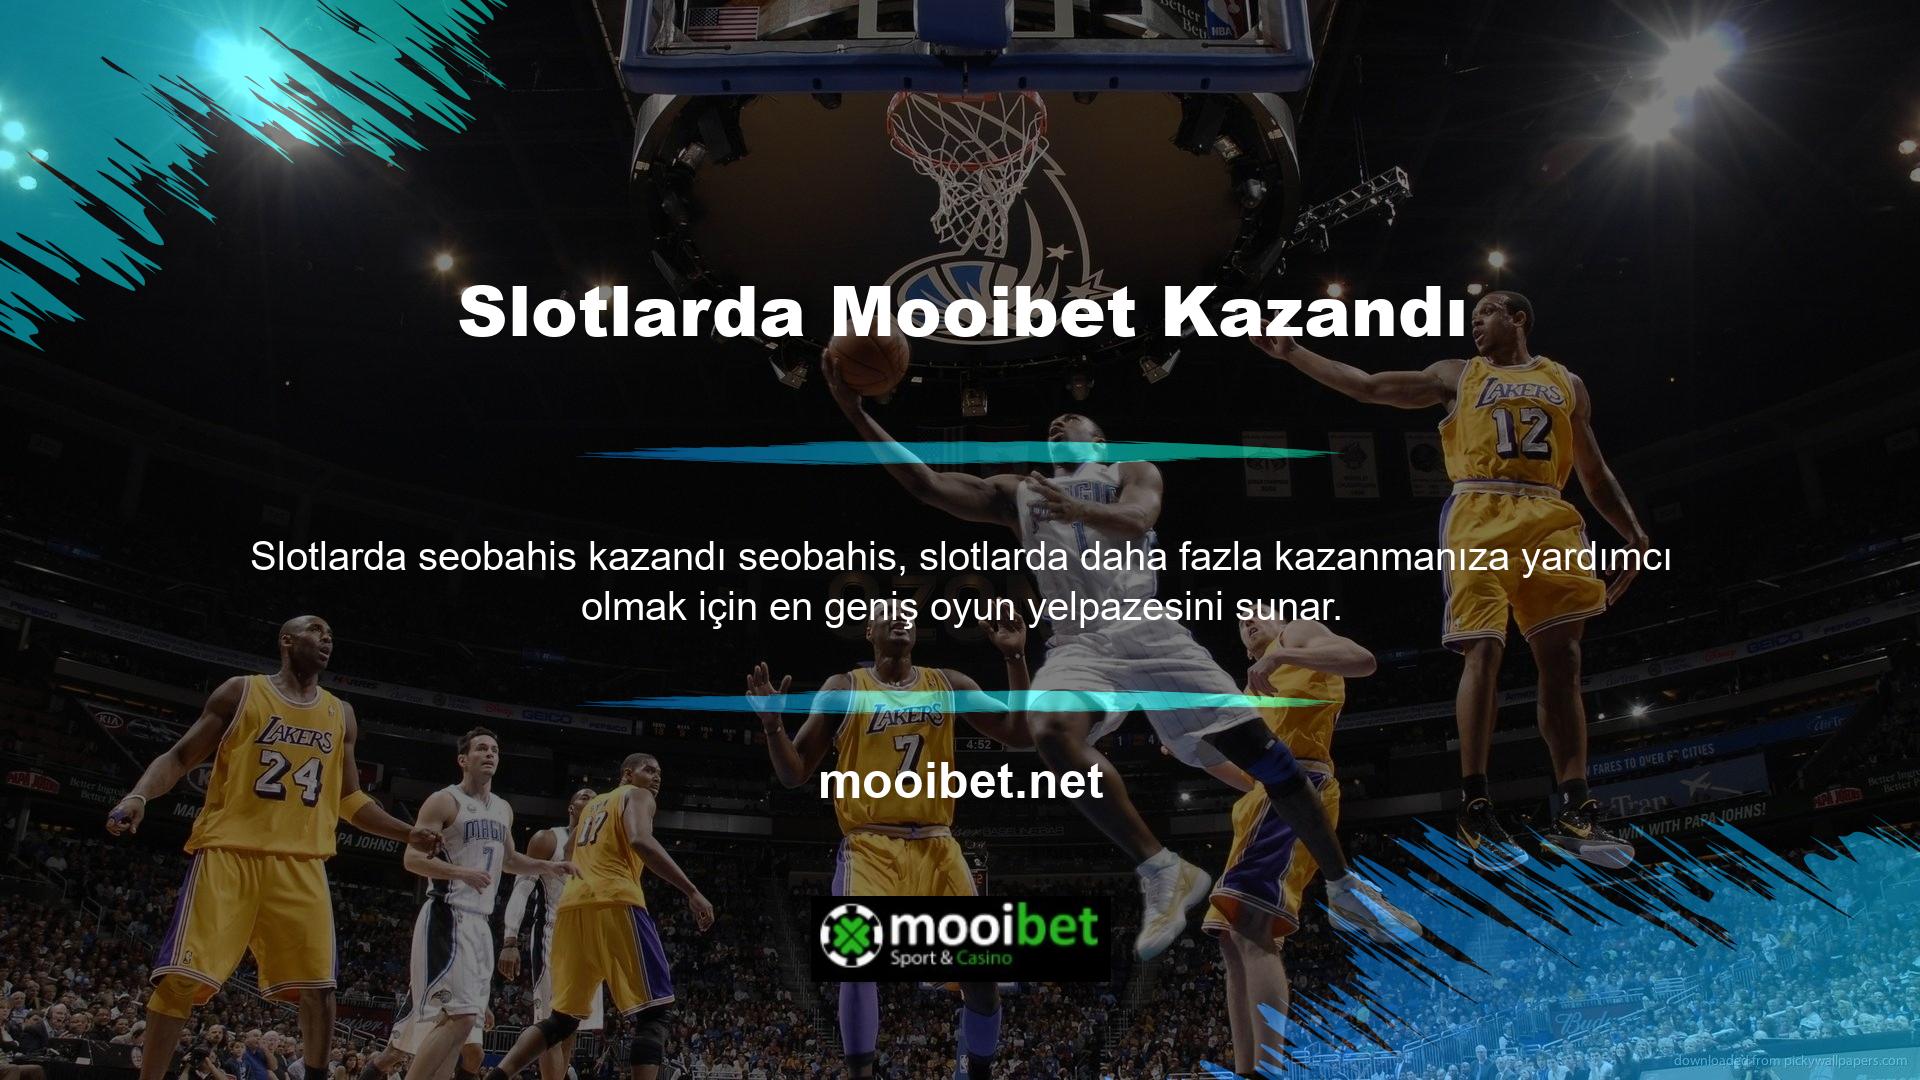 En ünlü oyun sağlayıcıları ve lisanslı slot oyunları Mooibet web sitesinde mevcuttur